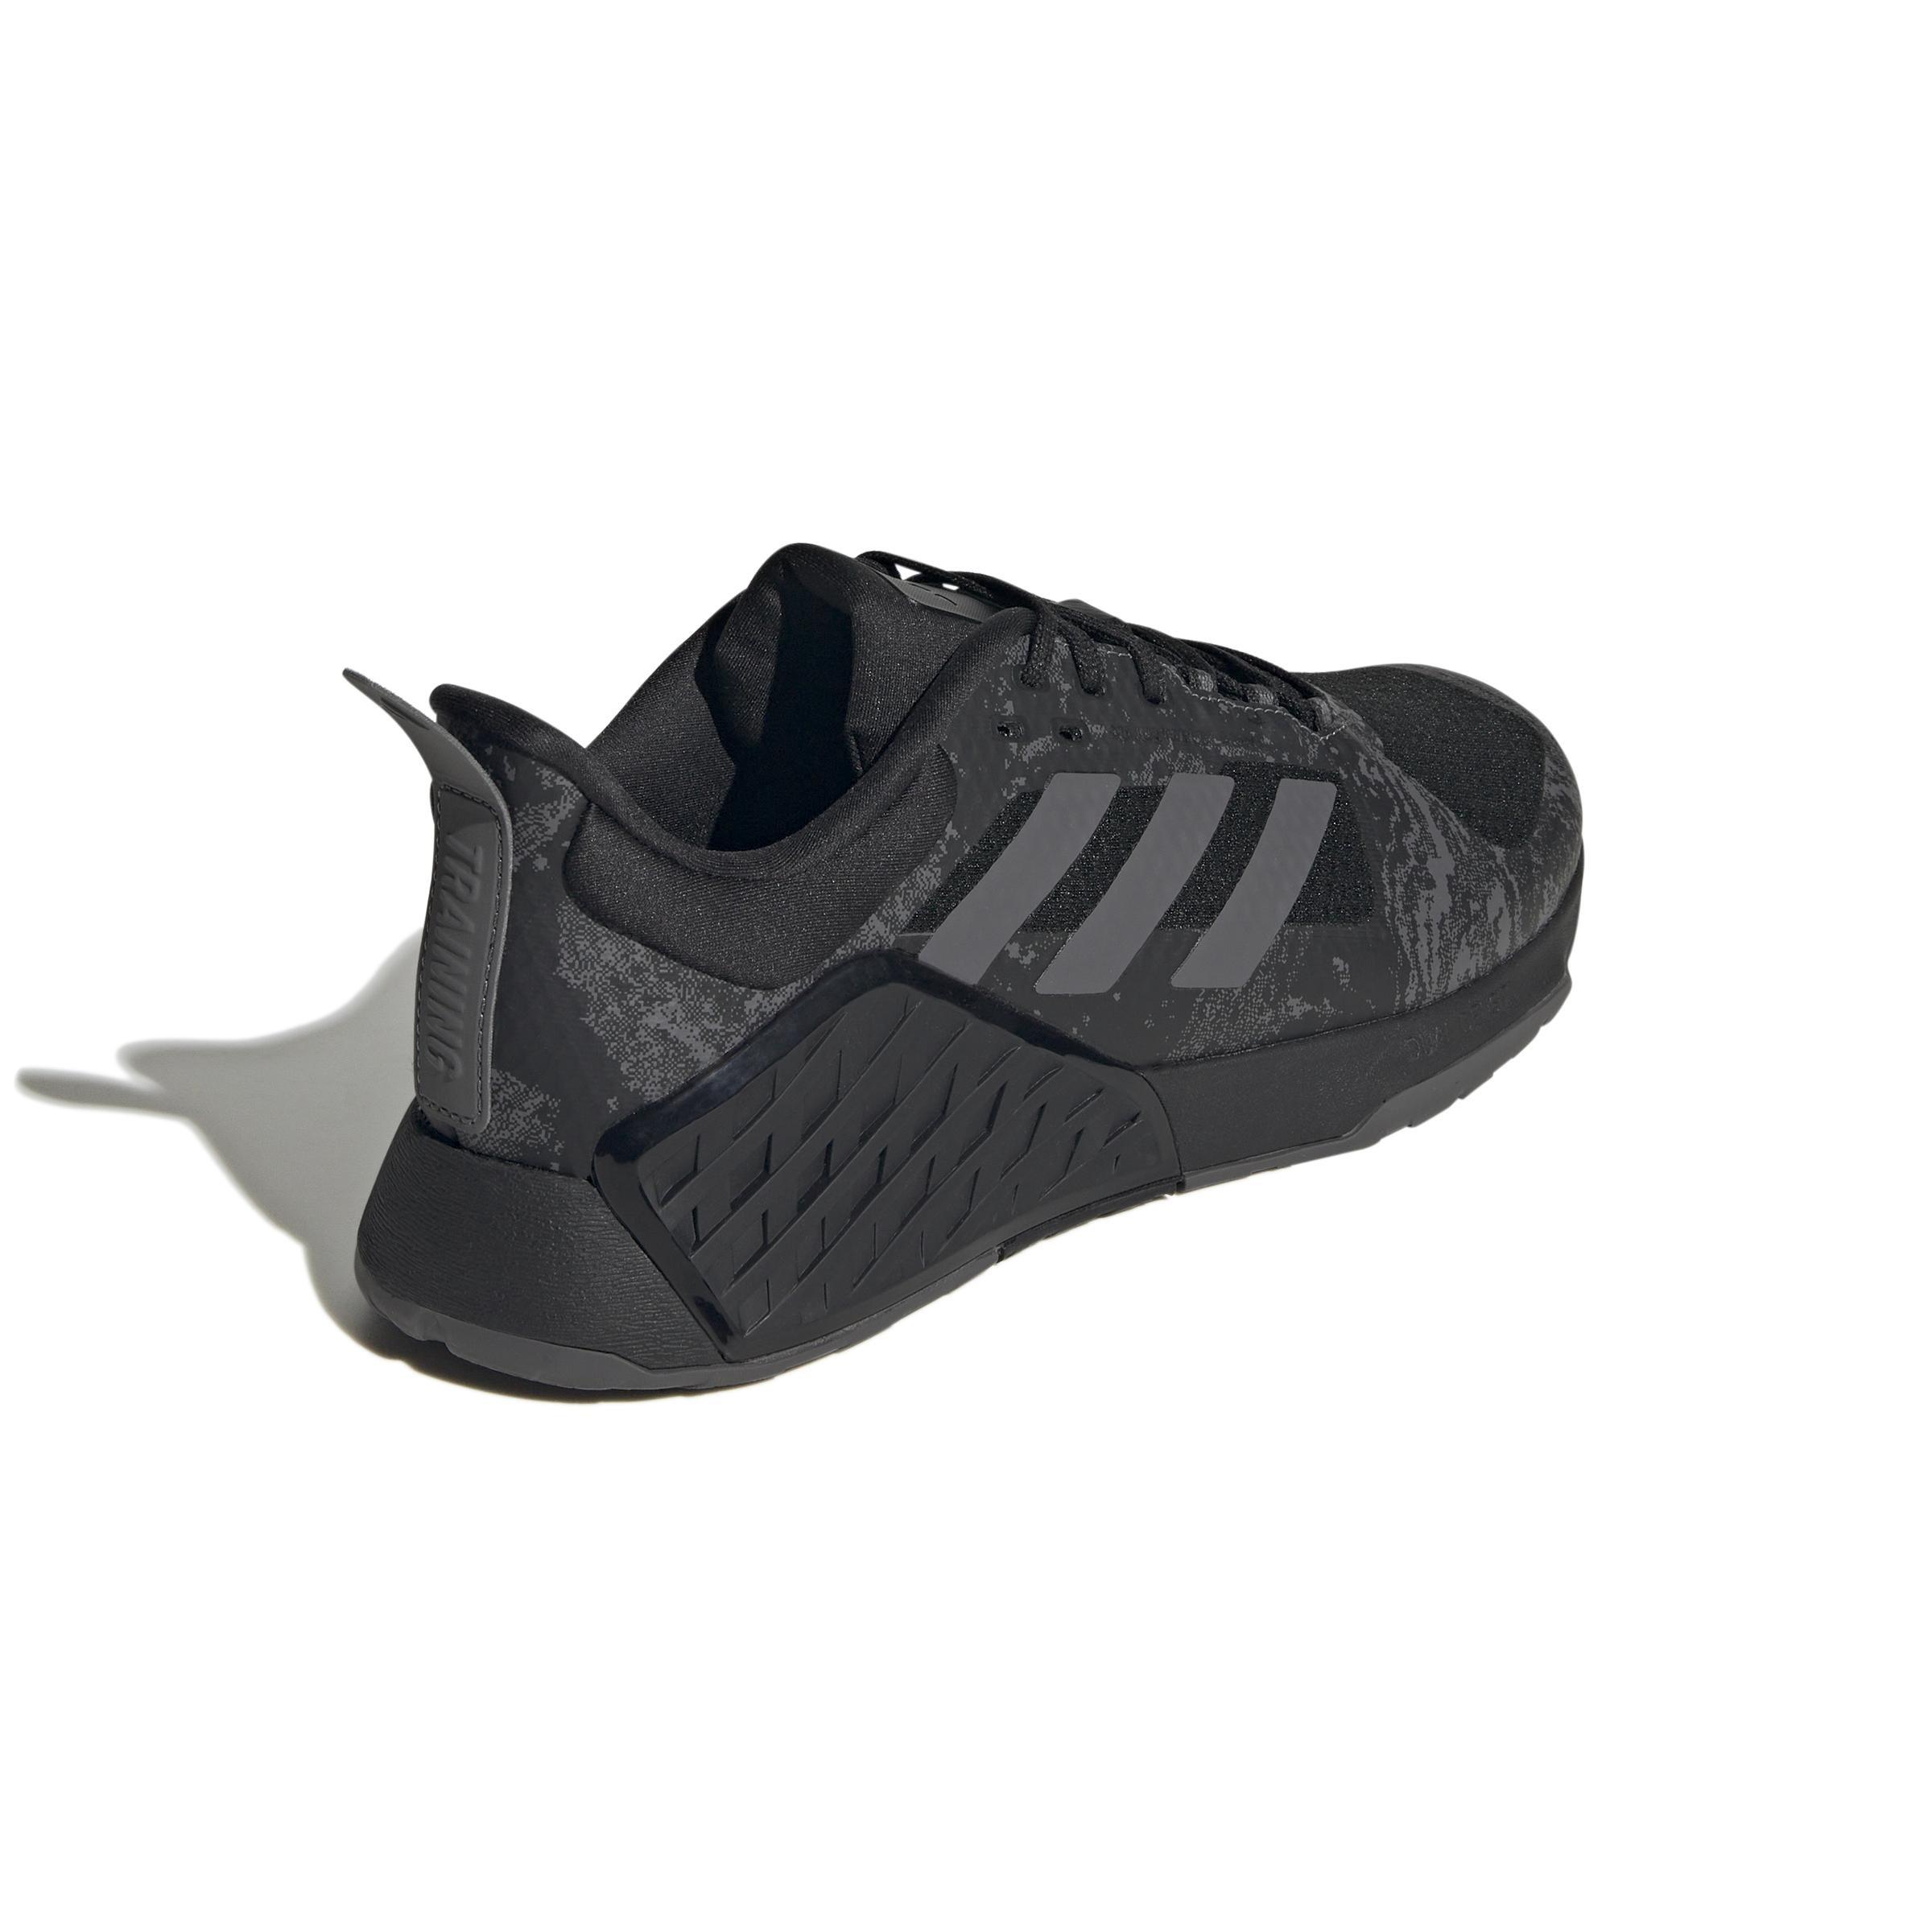 adidas - Unisex Dropset 2 Trainer, Black